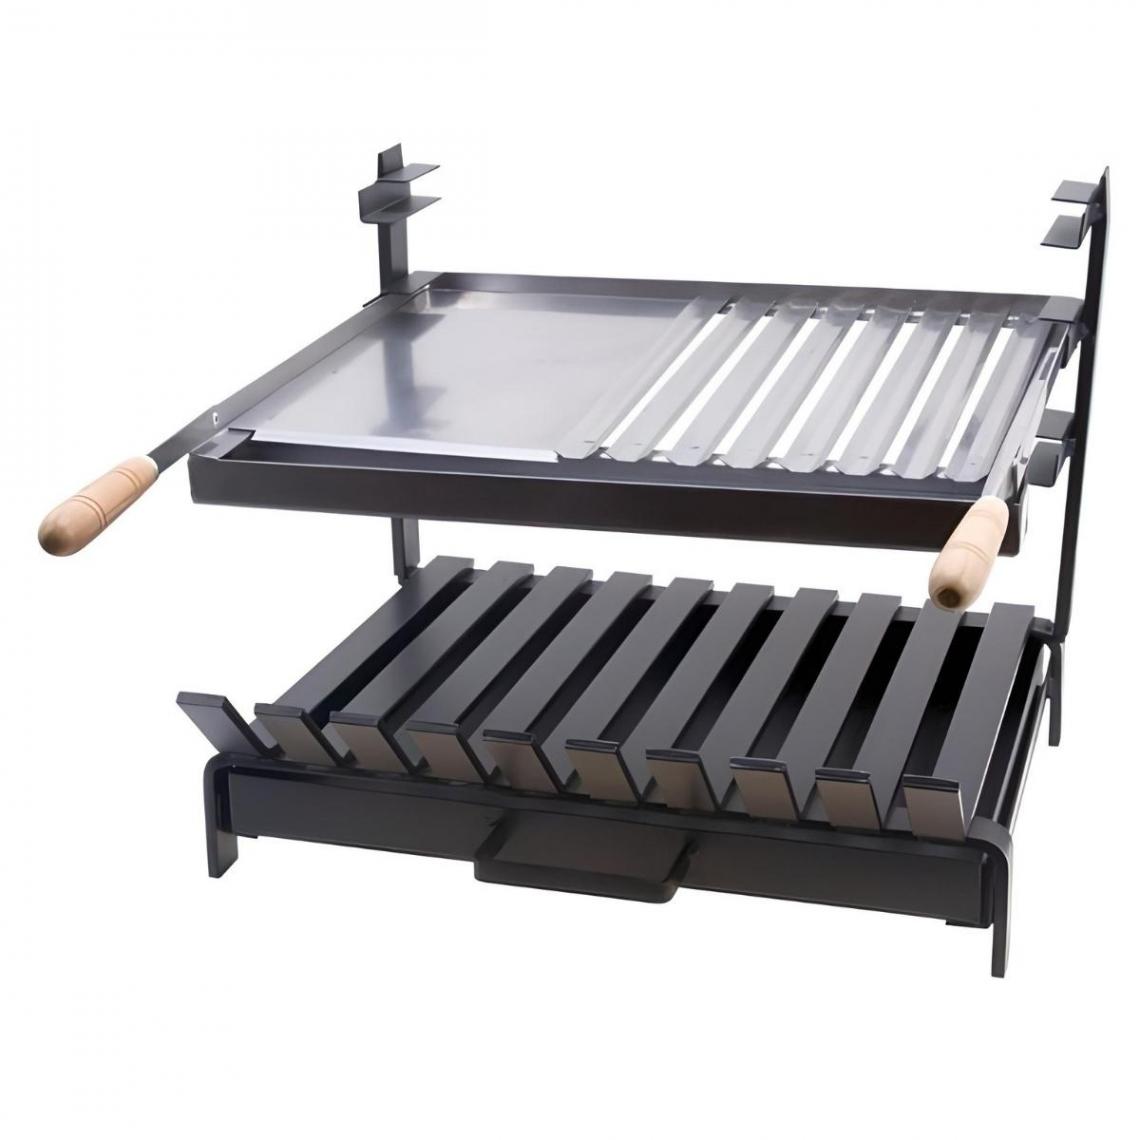 Visiodirect - Grille à rôtir avec tiroir et récupérateur de graisse en Inox coloris Noir - 60 x 48 x 40cm - Accessoires barbecue